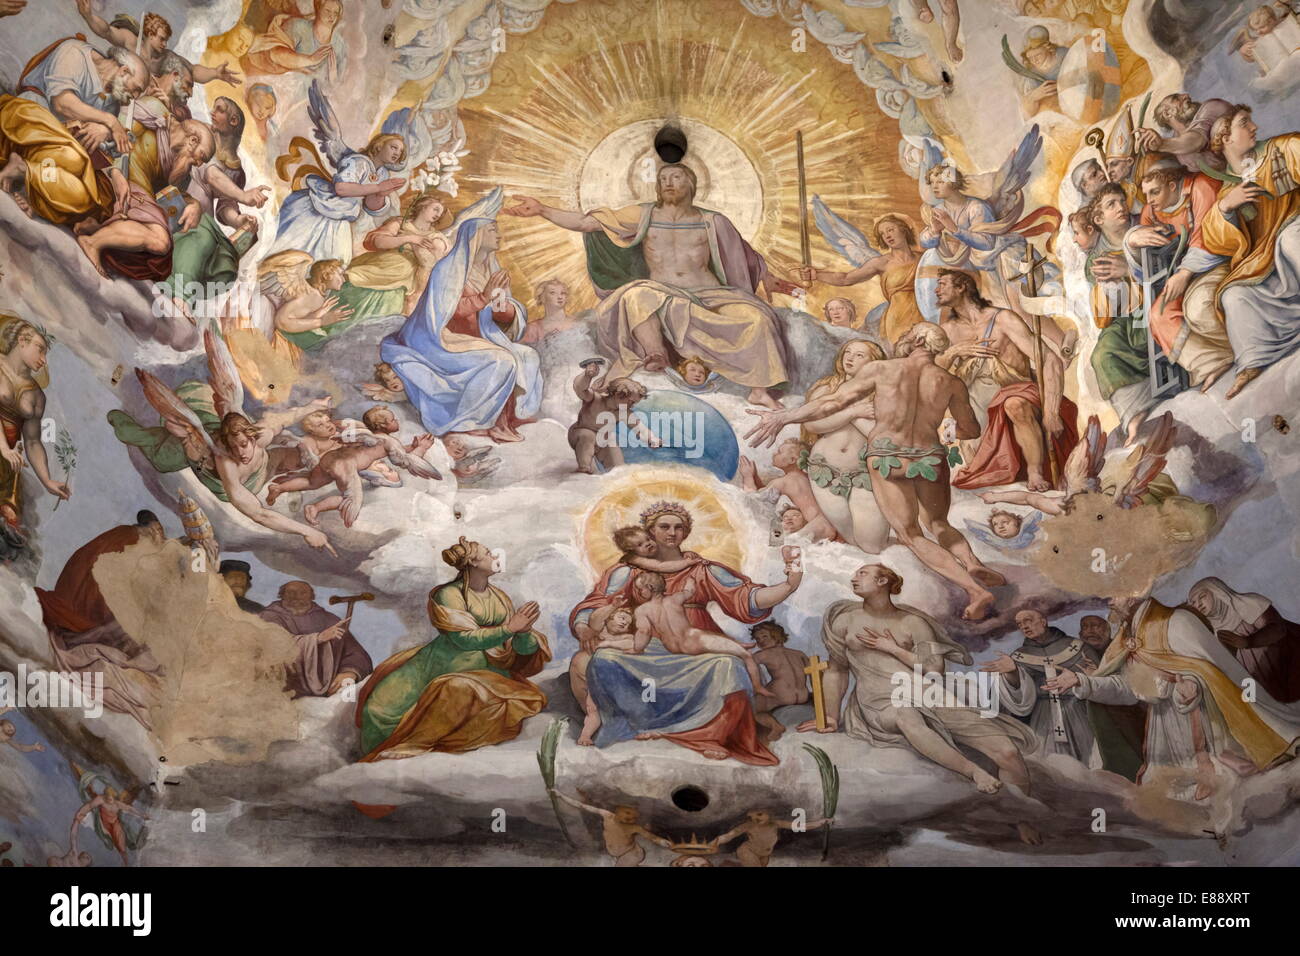 Kuppel Fresko des jüngsten Gerichts von Giorgio Vasari und Federico Zuccari, Florenz, der UNESCO, Toskana, Italien Stockfoto